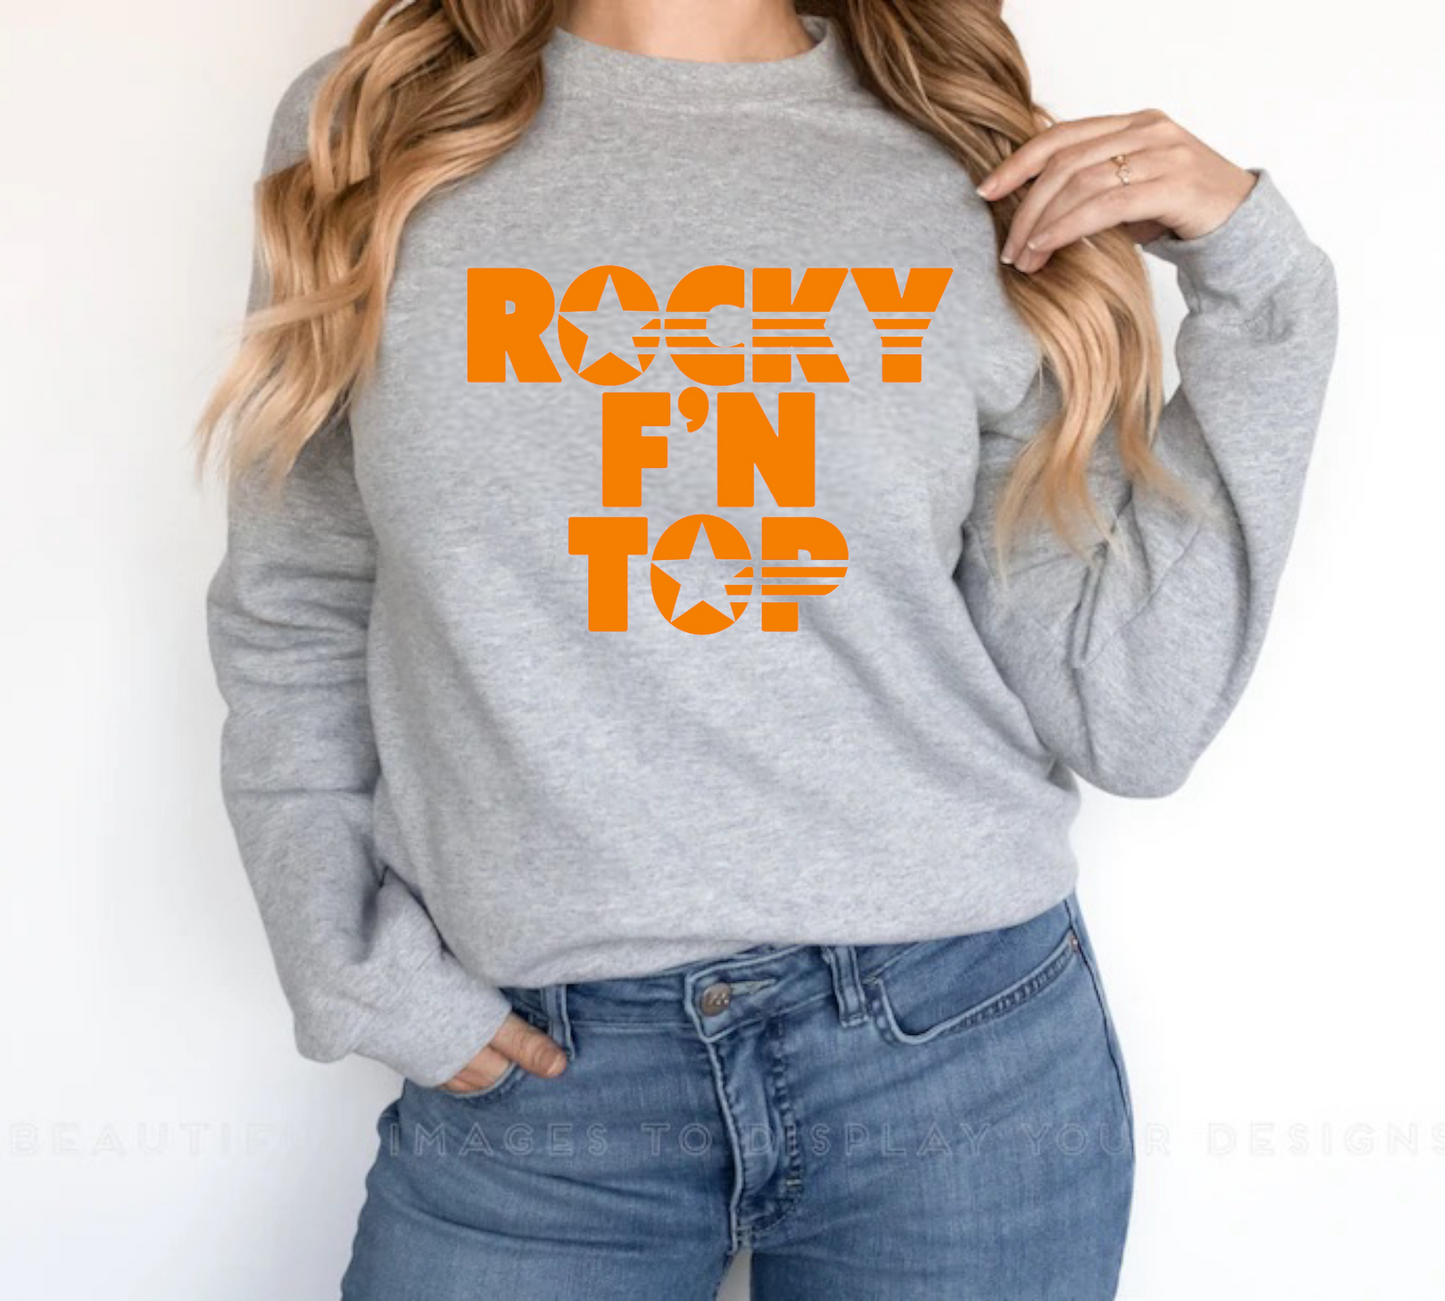 Rocky F’N Top Crewneck Sweatshirt or Tee